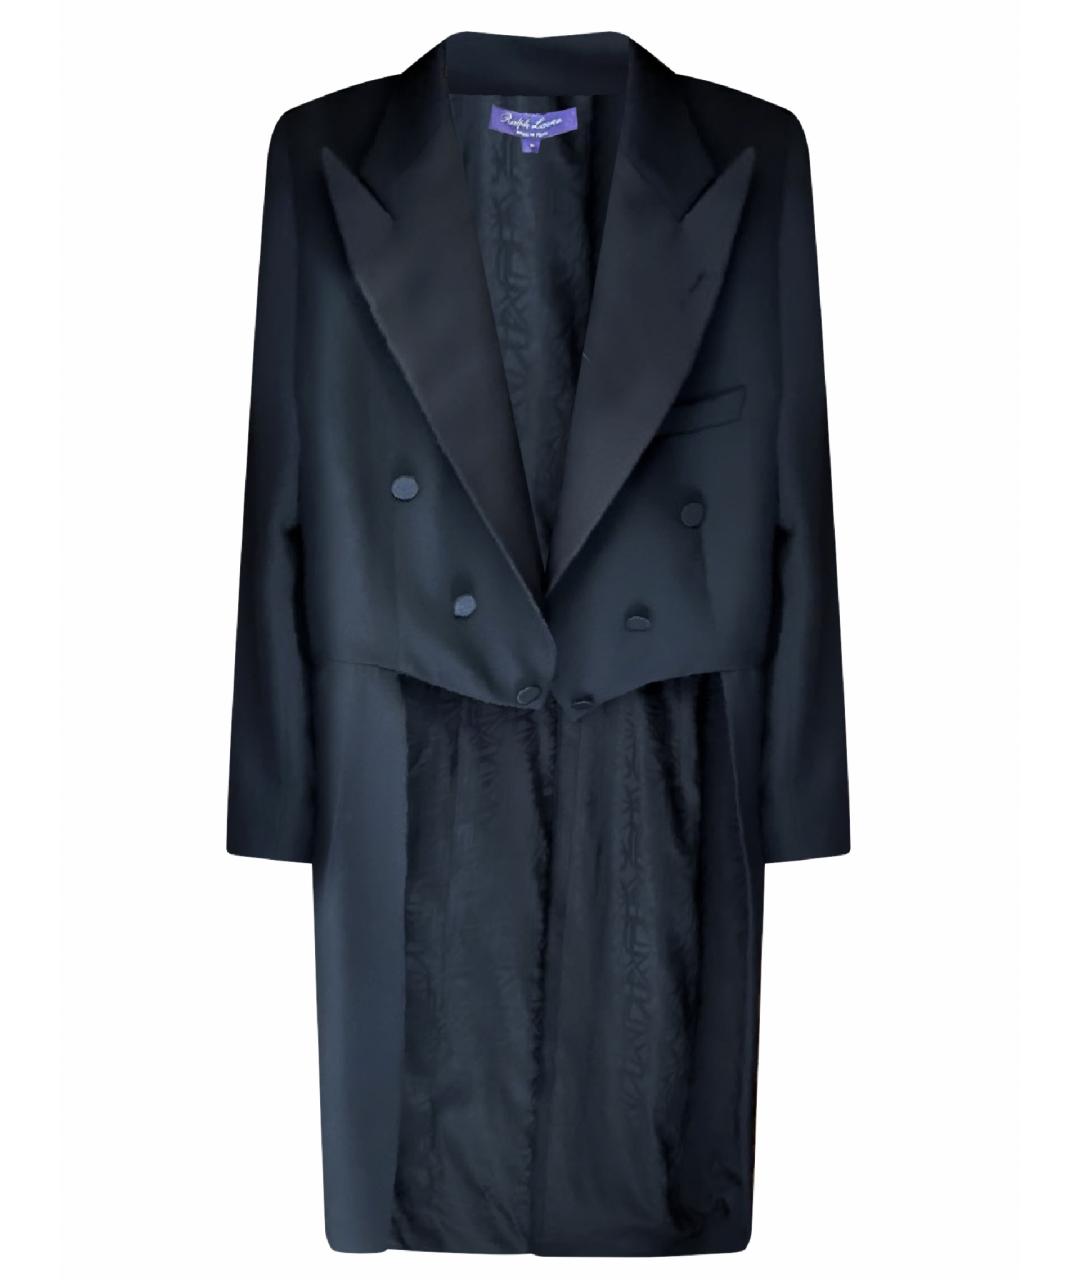 RALPH LAUREN PURPLE LABEL Черный шерстяной жакет/пиджак, фото 1